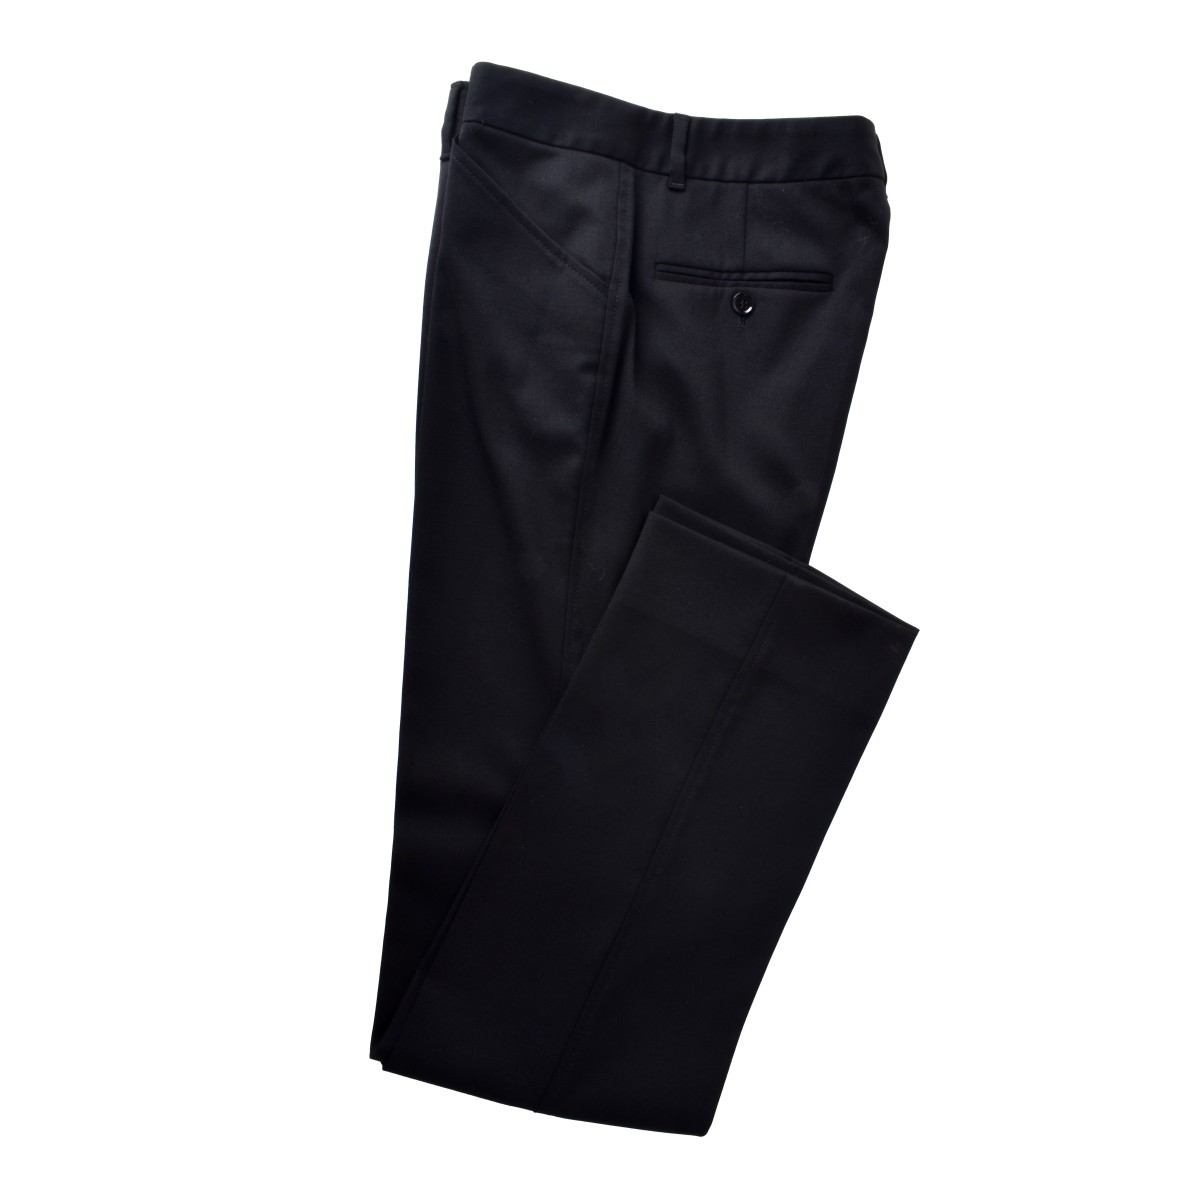 Two Dolce & Gabbana Black Pants